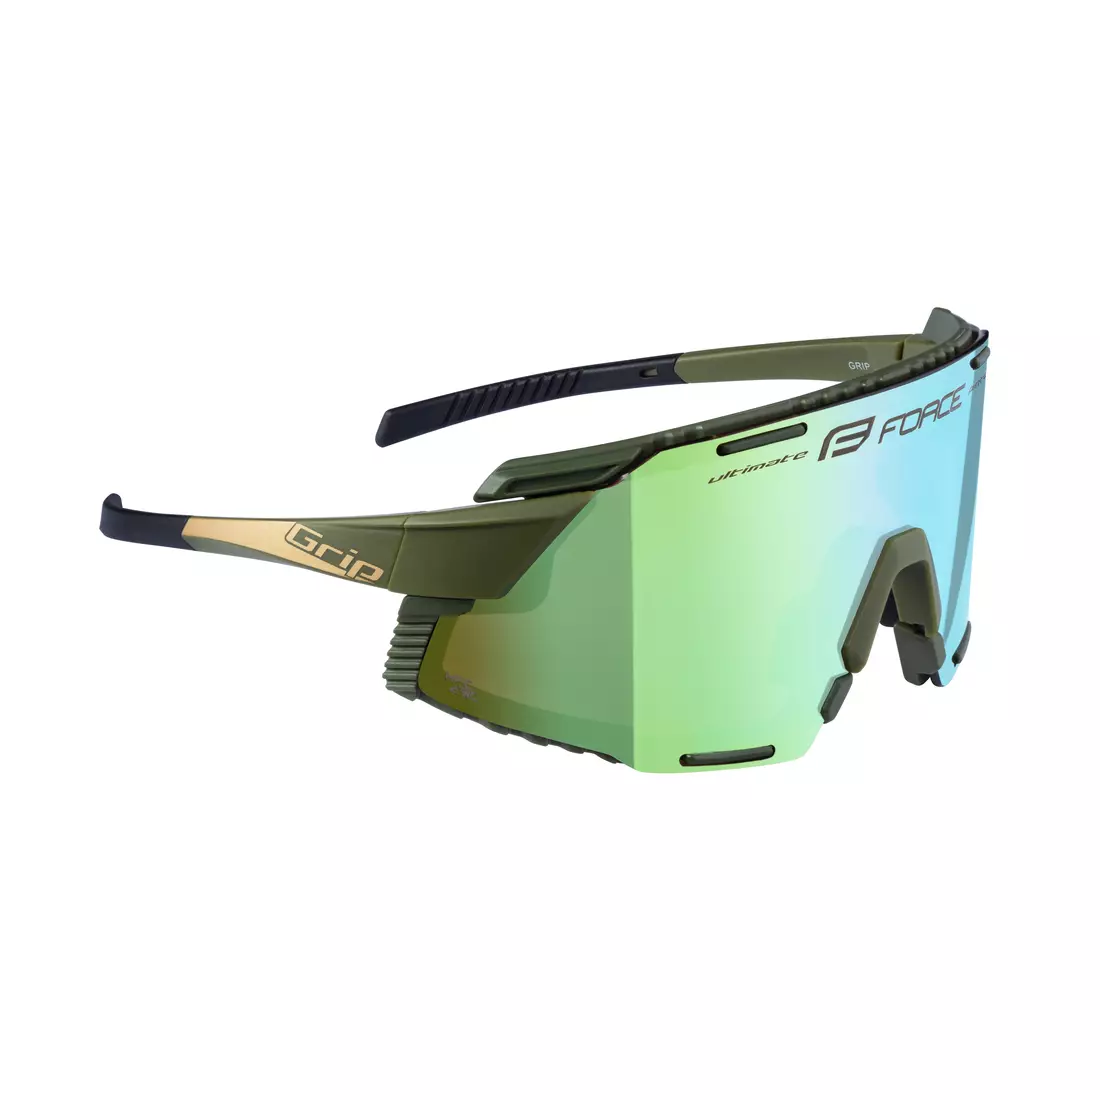 FORCE GRIP Sport szemüveg, olíva-arany